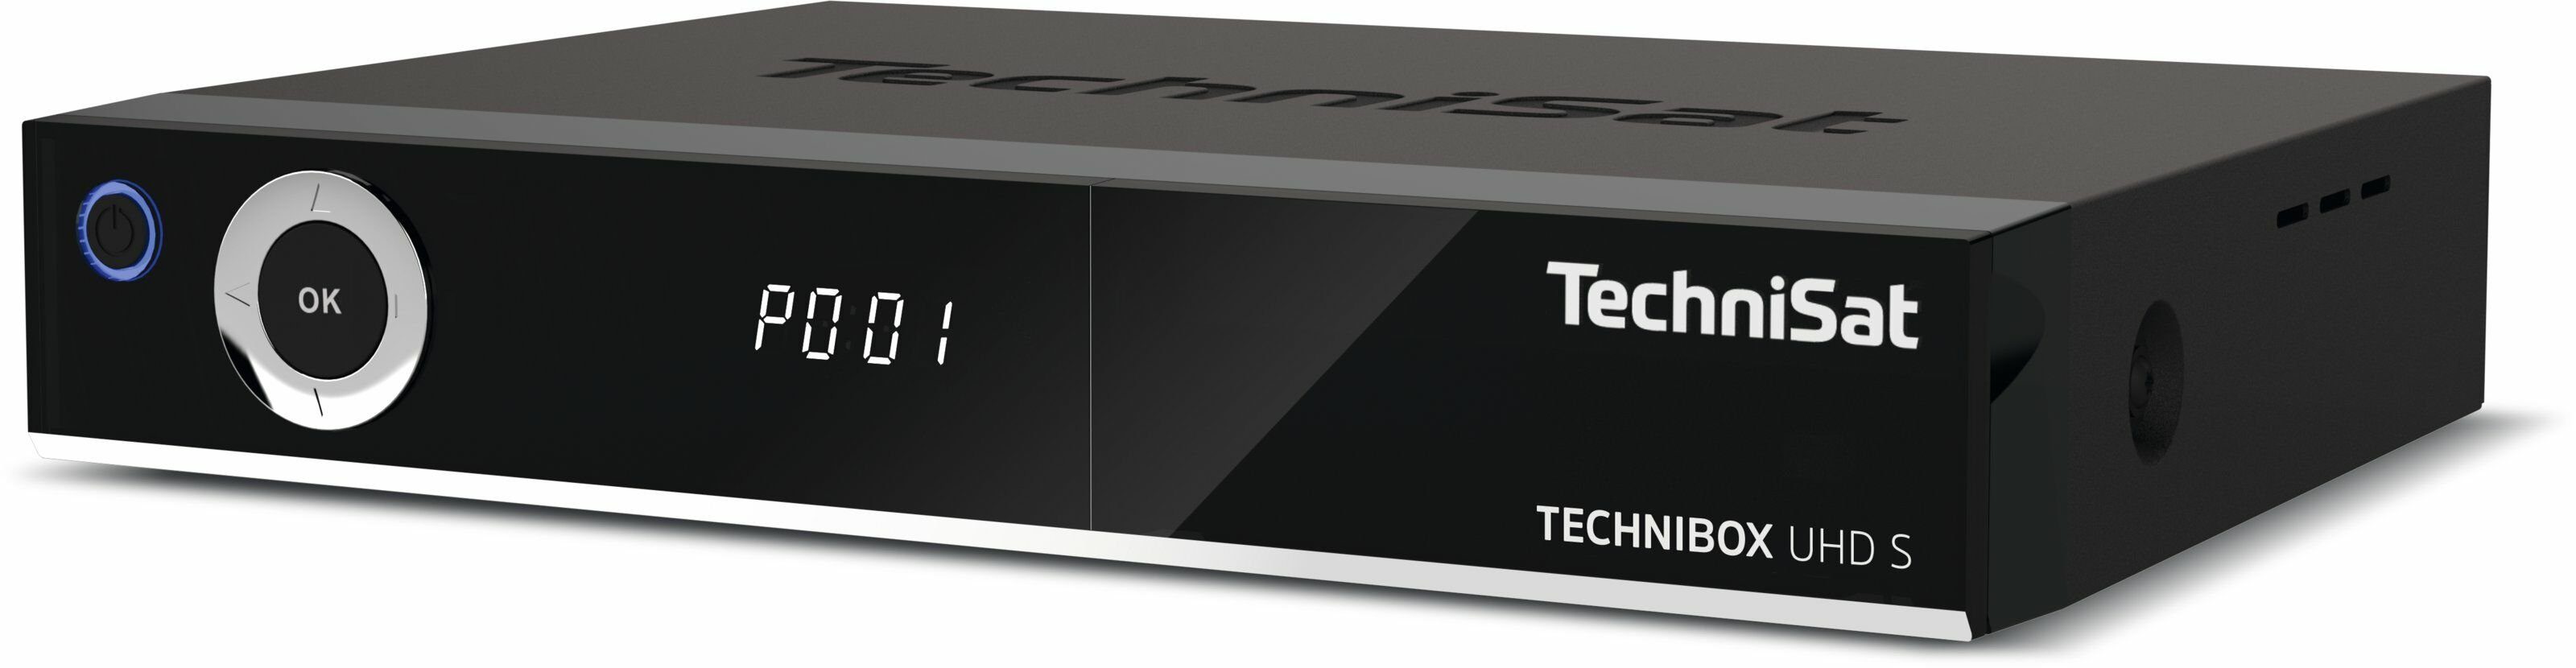 S TwinTuner) WLAN, (DVB-S/DVB-S2, USB TechniSat 3.0, SAT-Receiver UHD App-Steuerung, CI+, TECHNIBOX